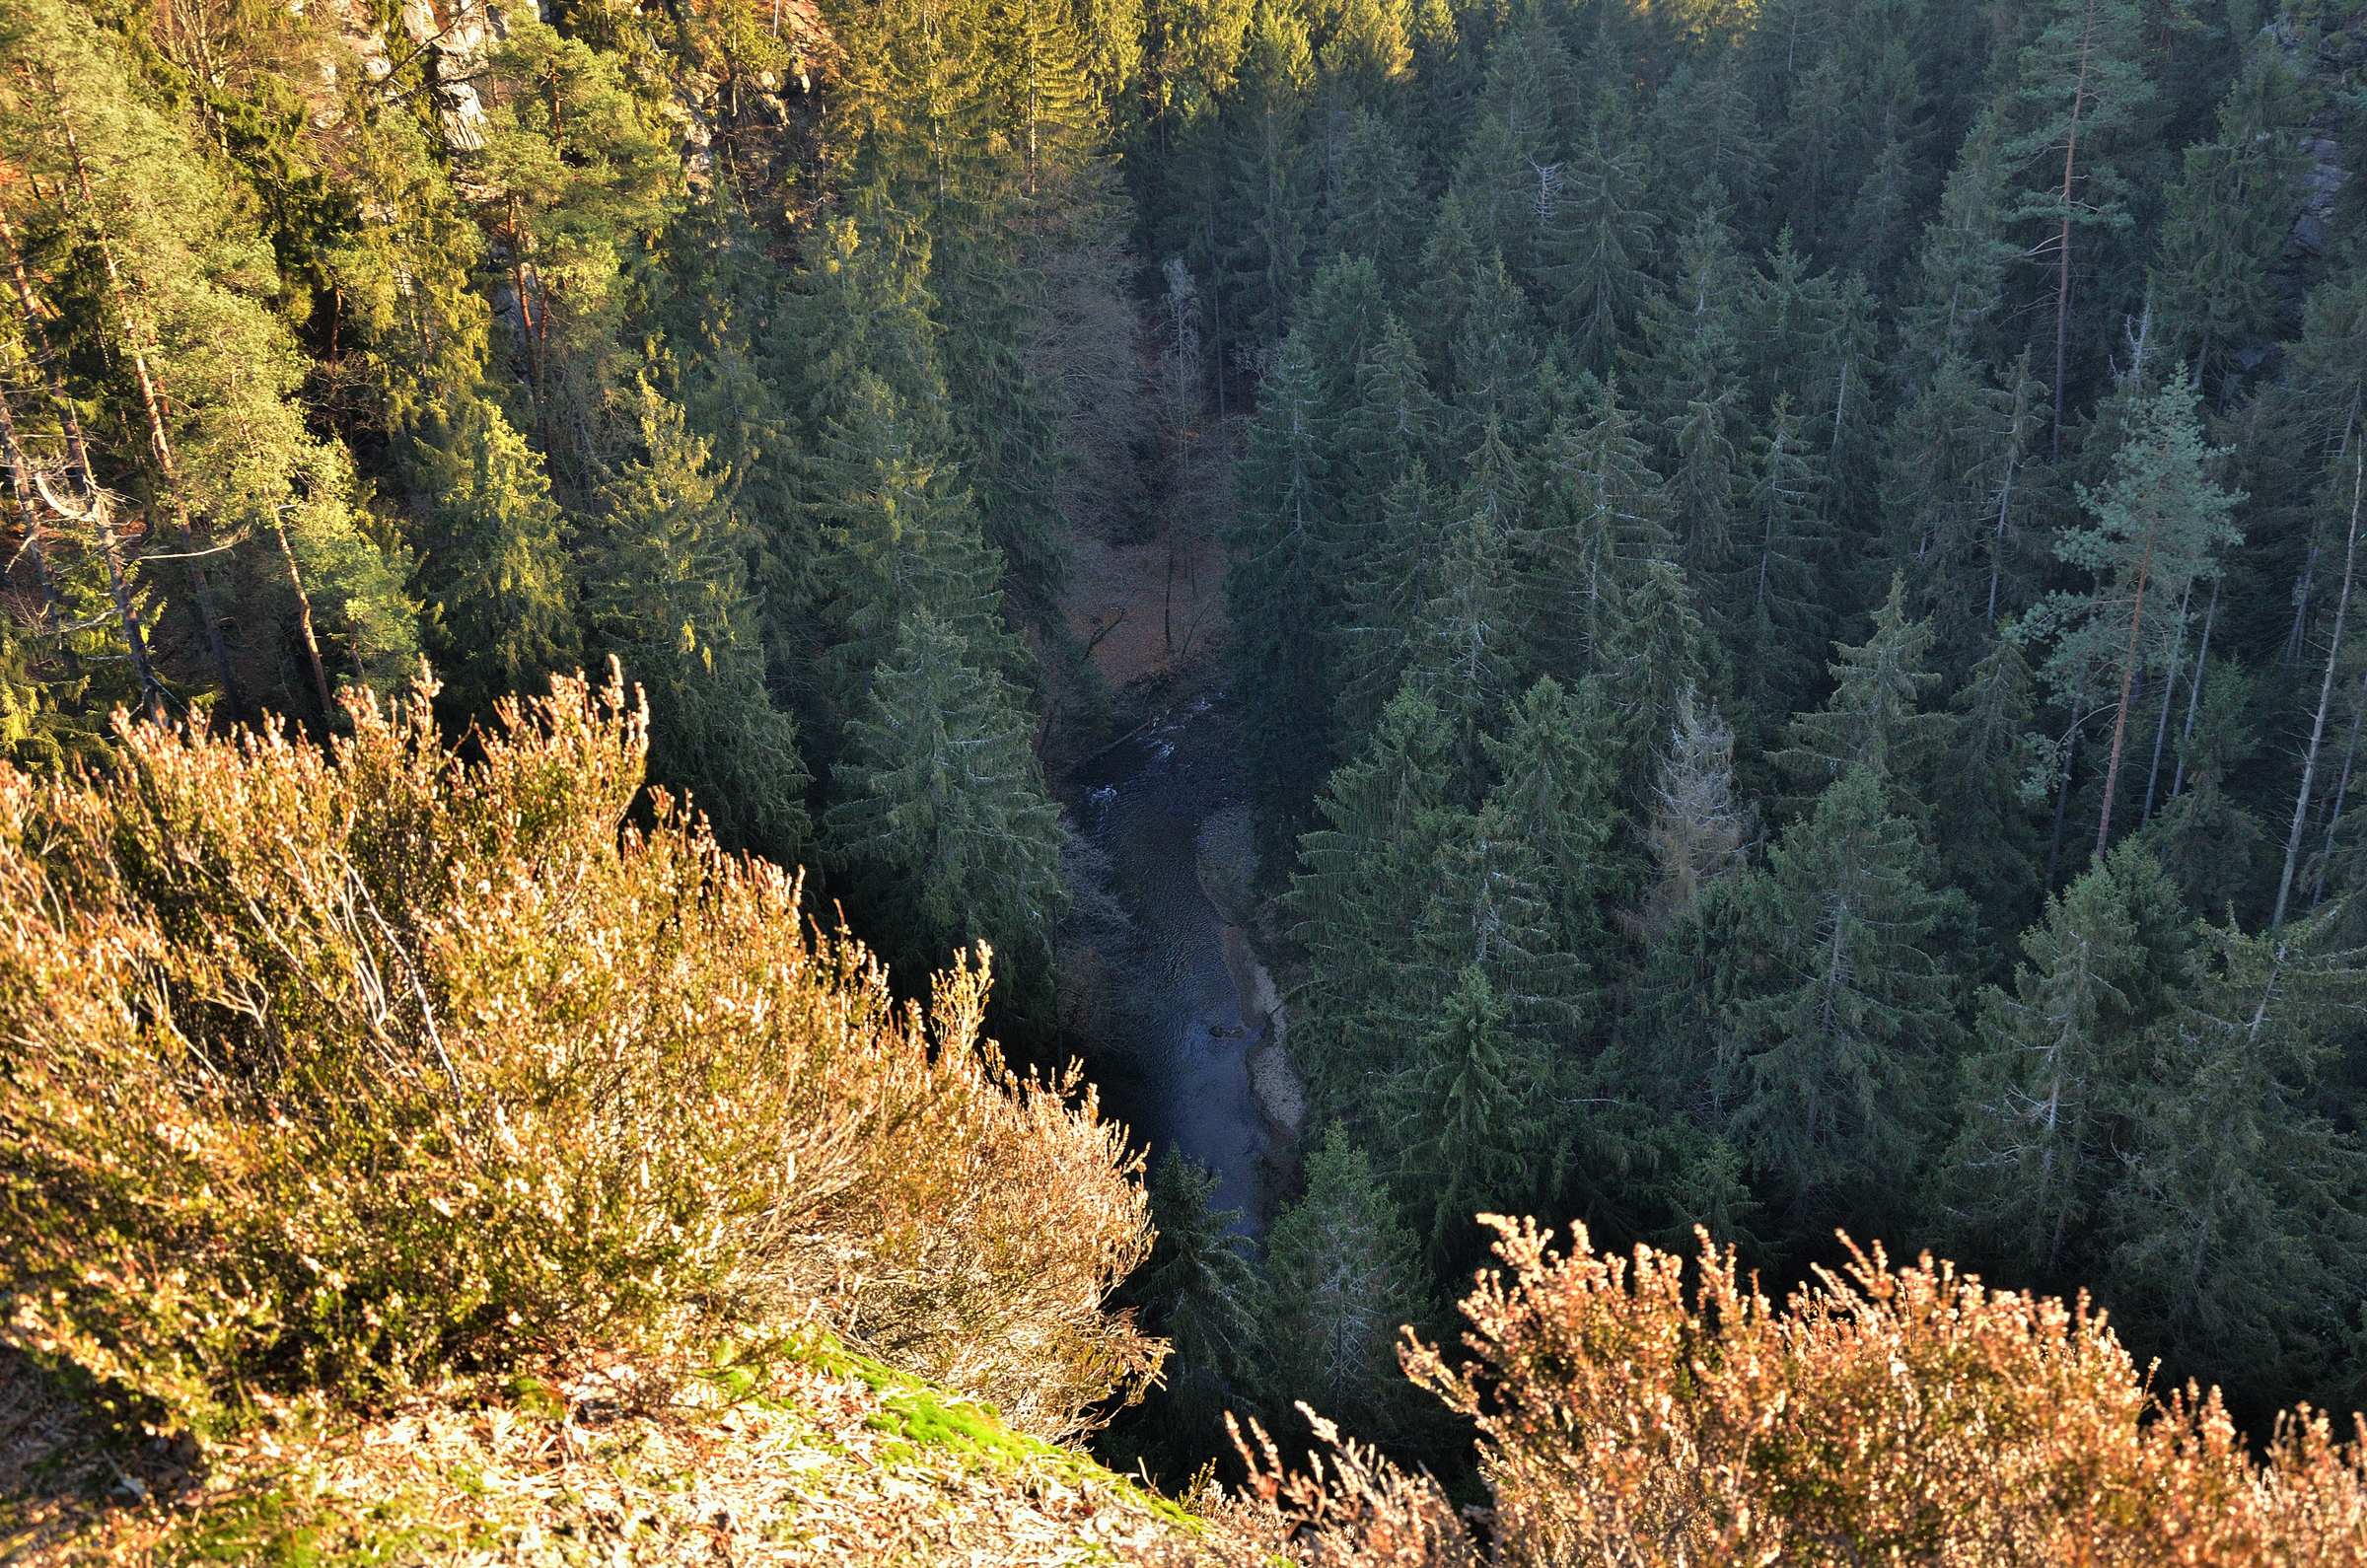 Вид на реку Каменице с вершины скалы Мельничная башня (чеш. Mlýnská věž) недалеко от Дольской мельницы (чеш. Dolský Mlýn) в Чешской Швейцарии.